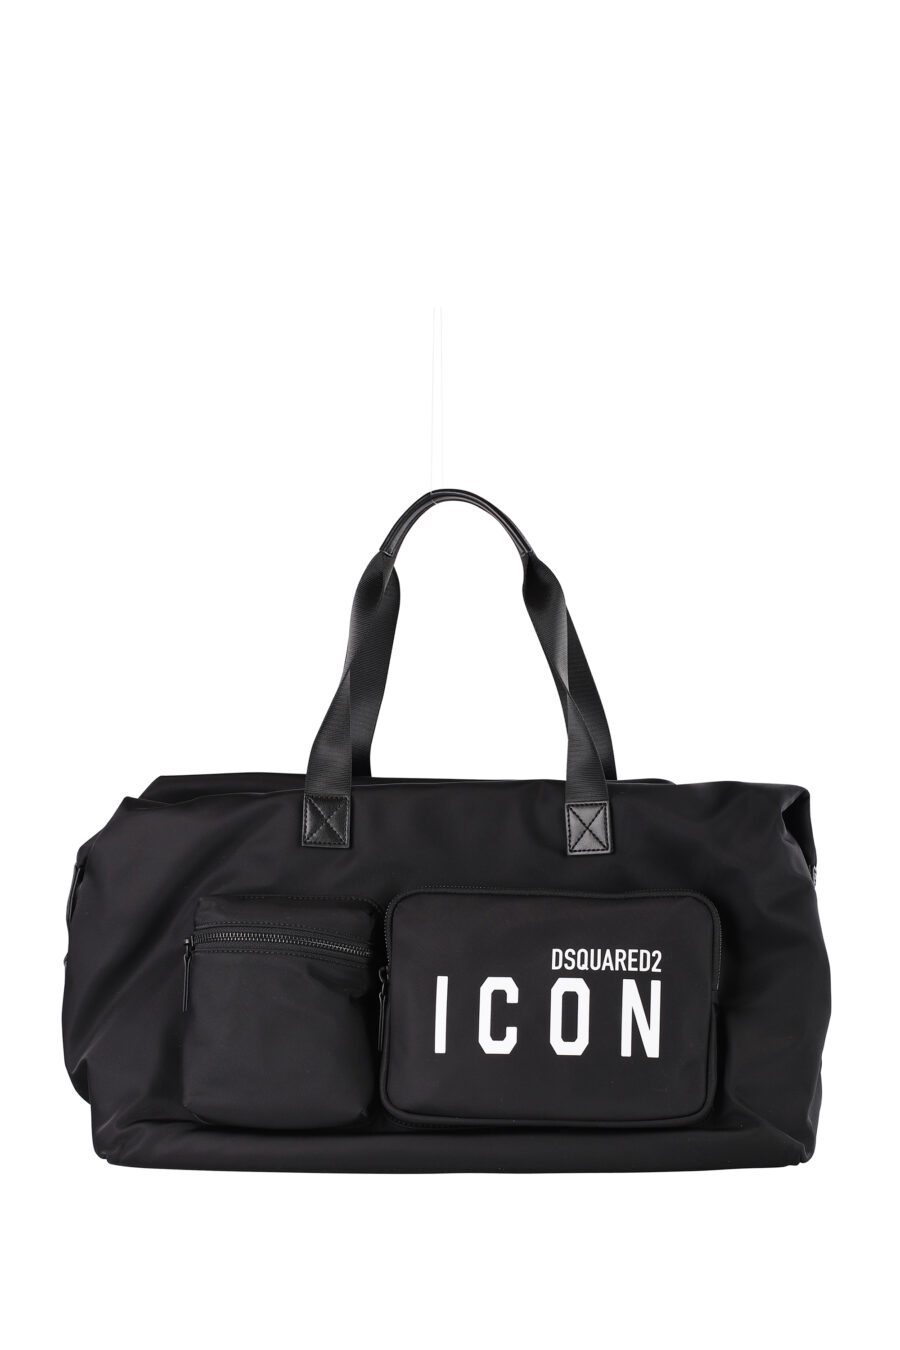 Maletín negro con logo "icon" - IMG 1288